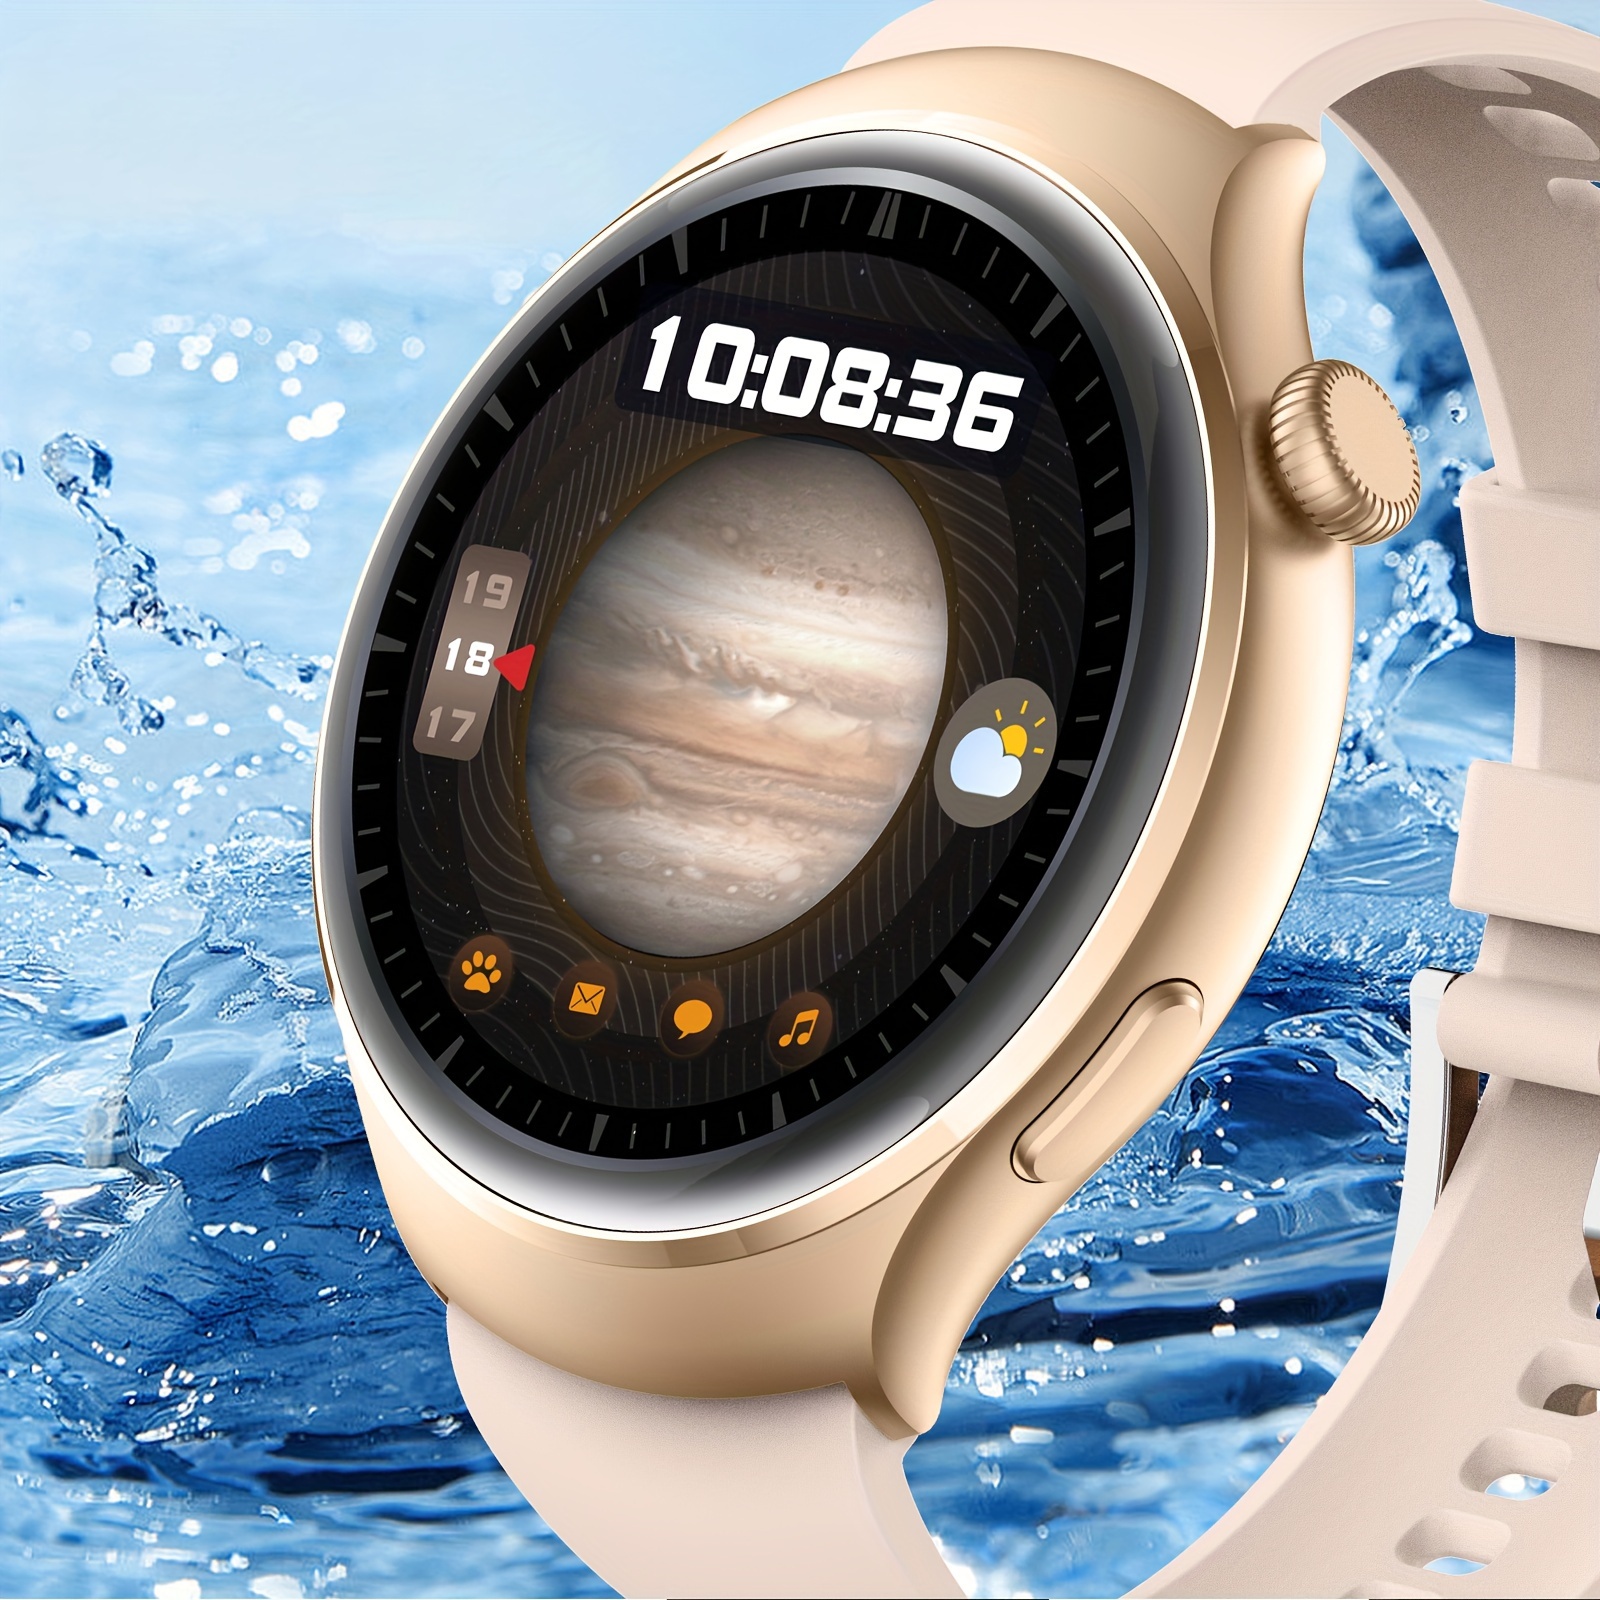 Samsung da detalles sobre el Gear A, un smartwatch redondo